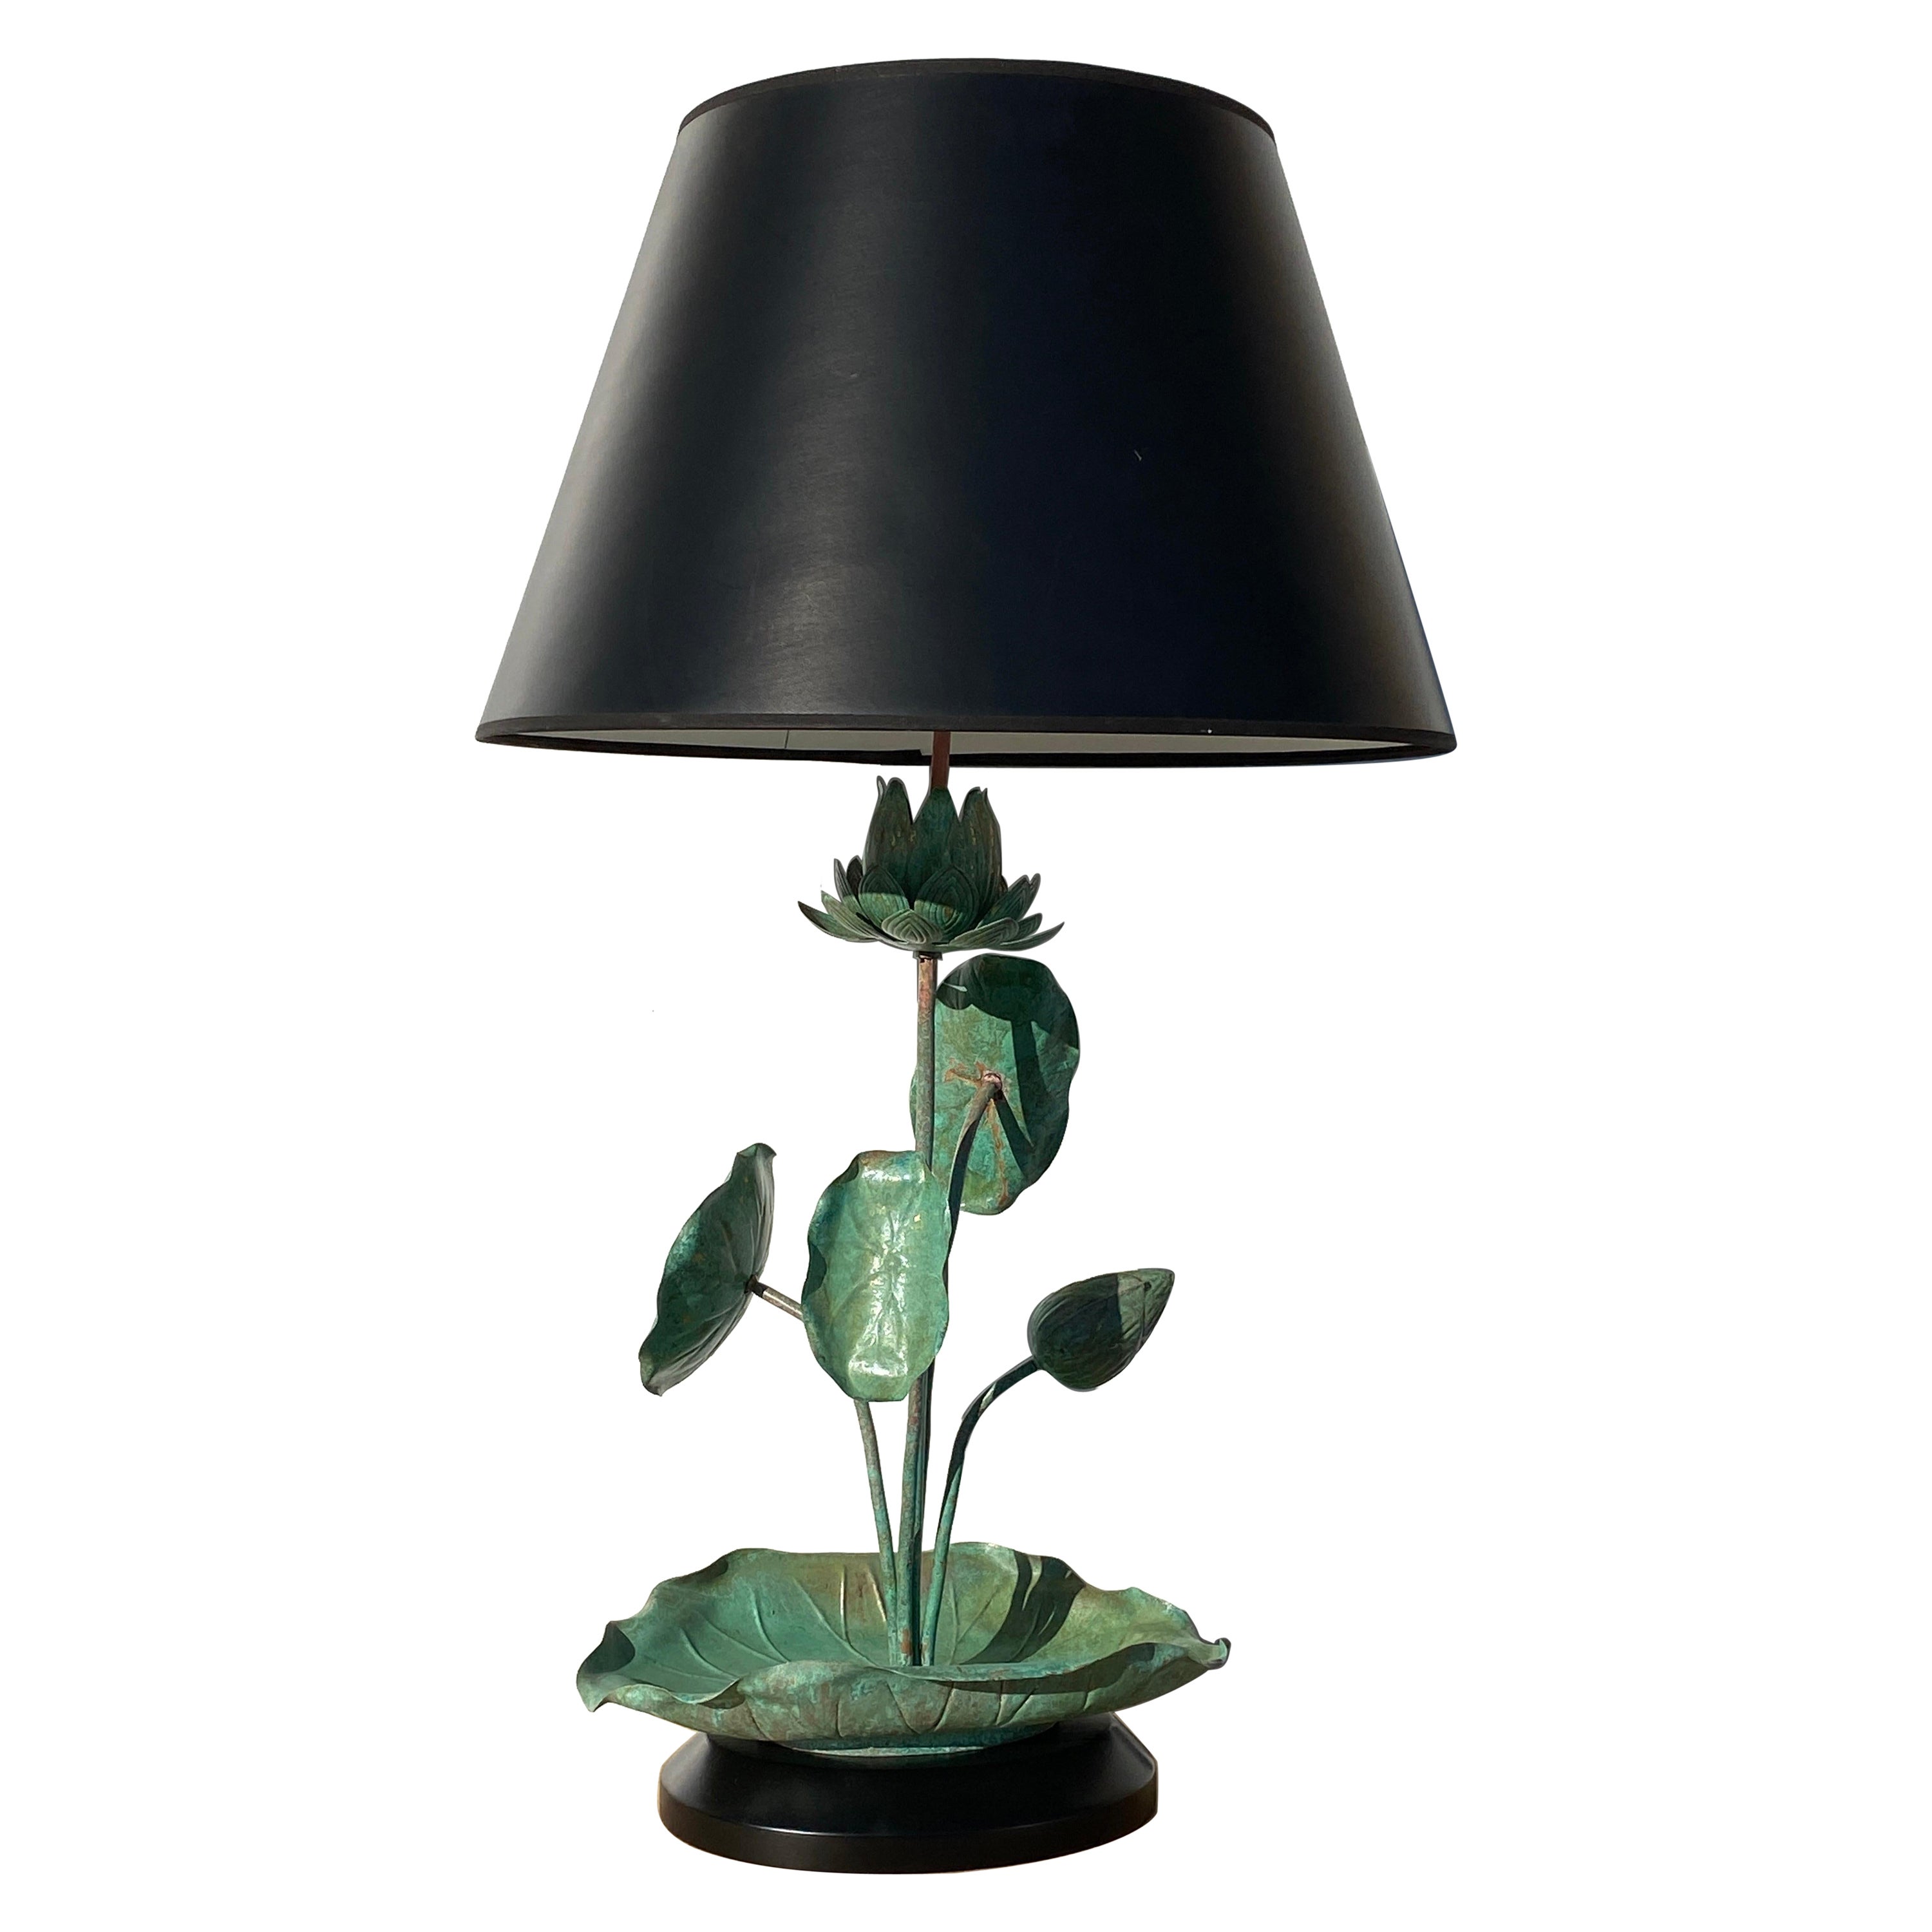 Lotus-Lampe aus Messing mit Verdigris-Patina